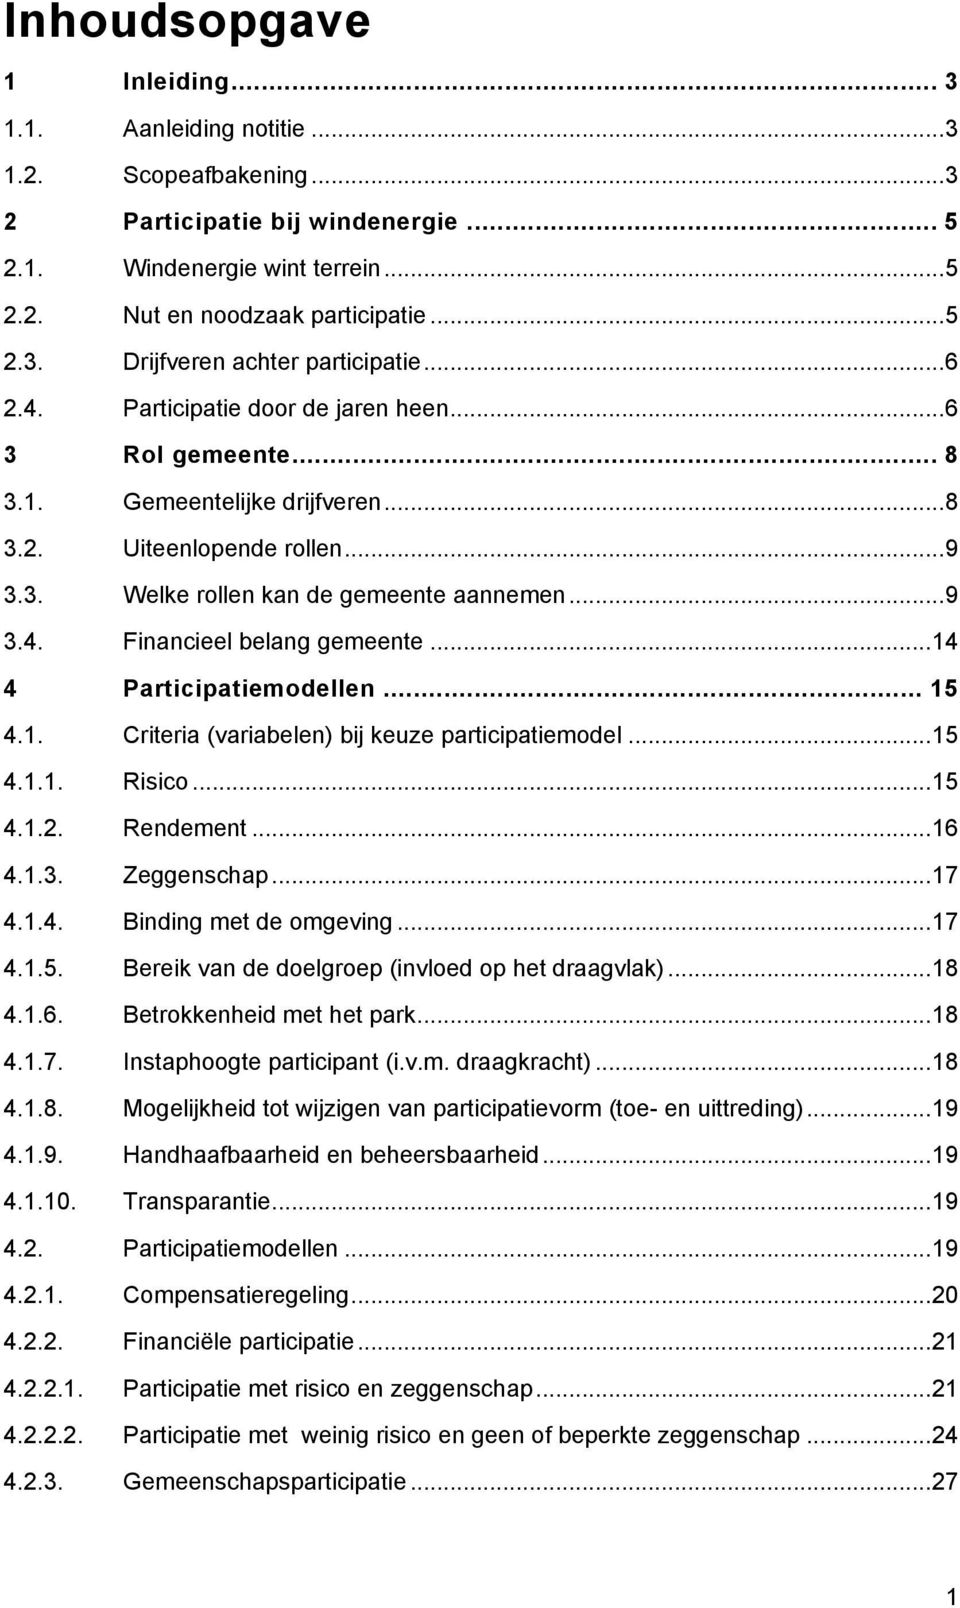 .. 14 4 Participatiemodellen... 15 4.1. Criteria (variabelen) bij keuze participatiemodel... 15 4.1.1. Risico... 15 4.1.2. Rendement... 16 4.1.3. Zeggenschap... 17 4.1.4. Binding met de omgeving.